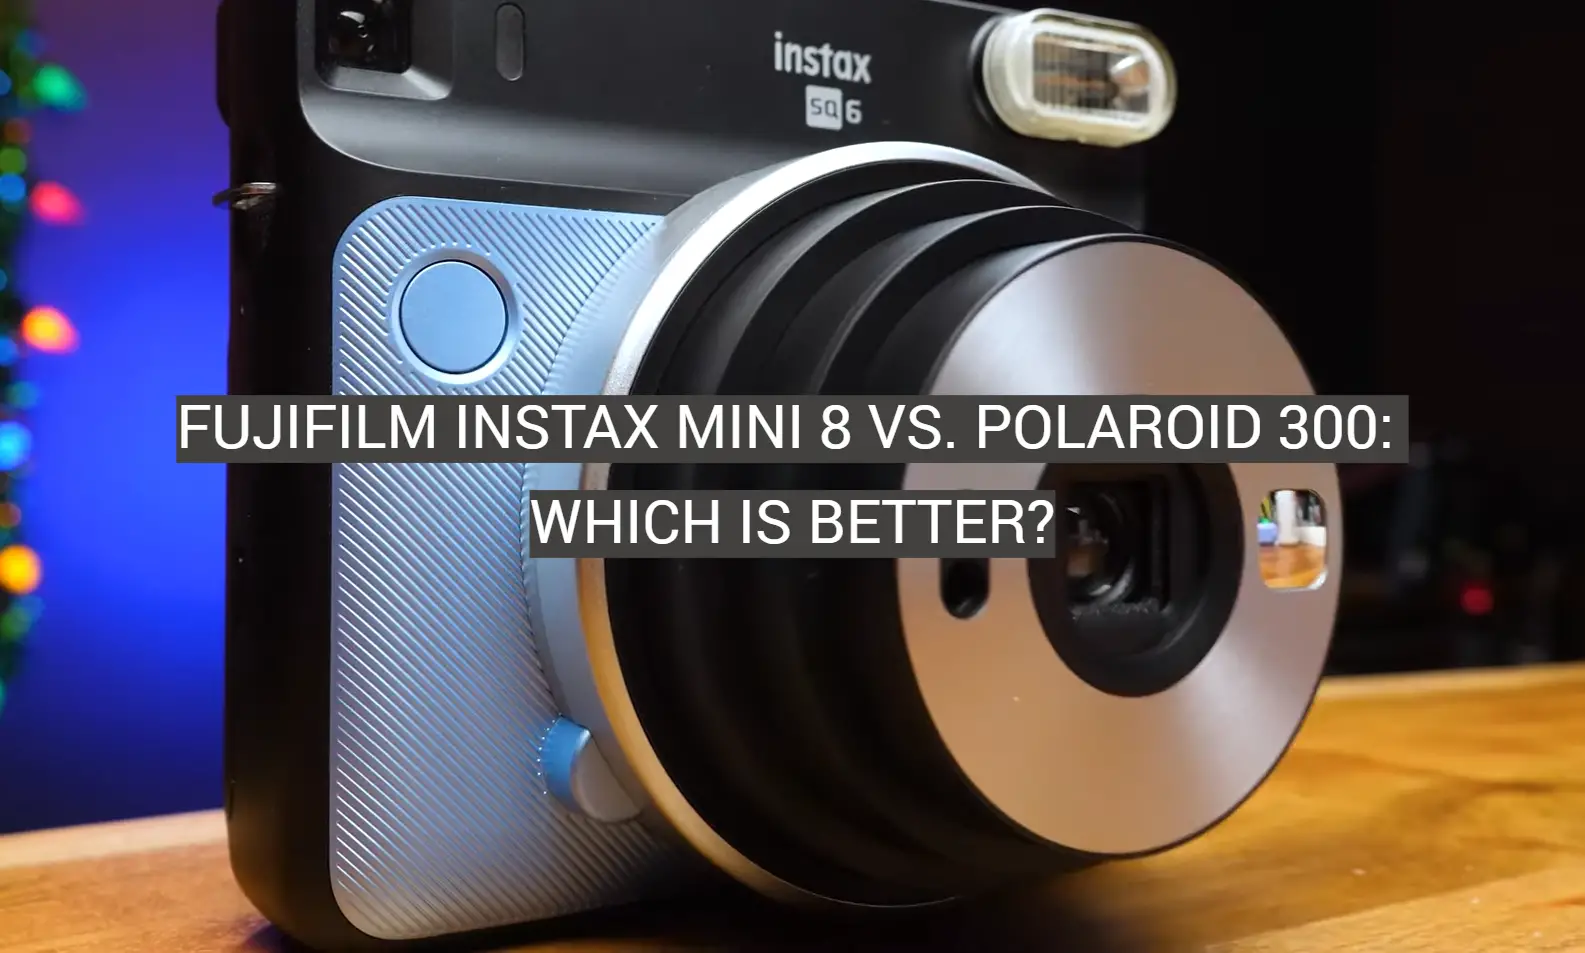 Fujifilm Instax Mini 8 vs. Polaroid 300: Which is Better?